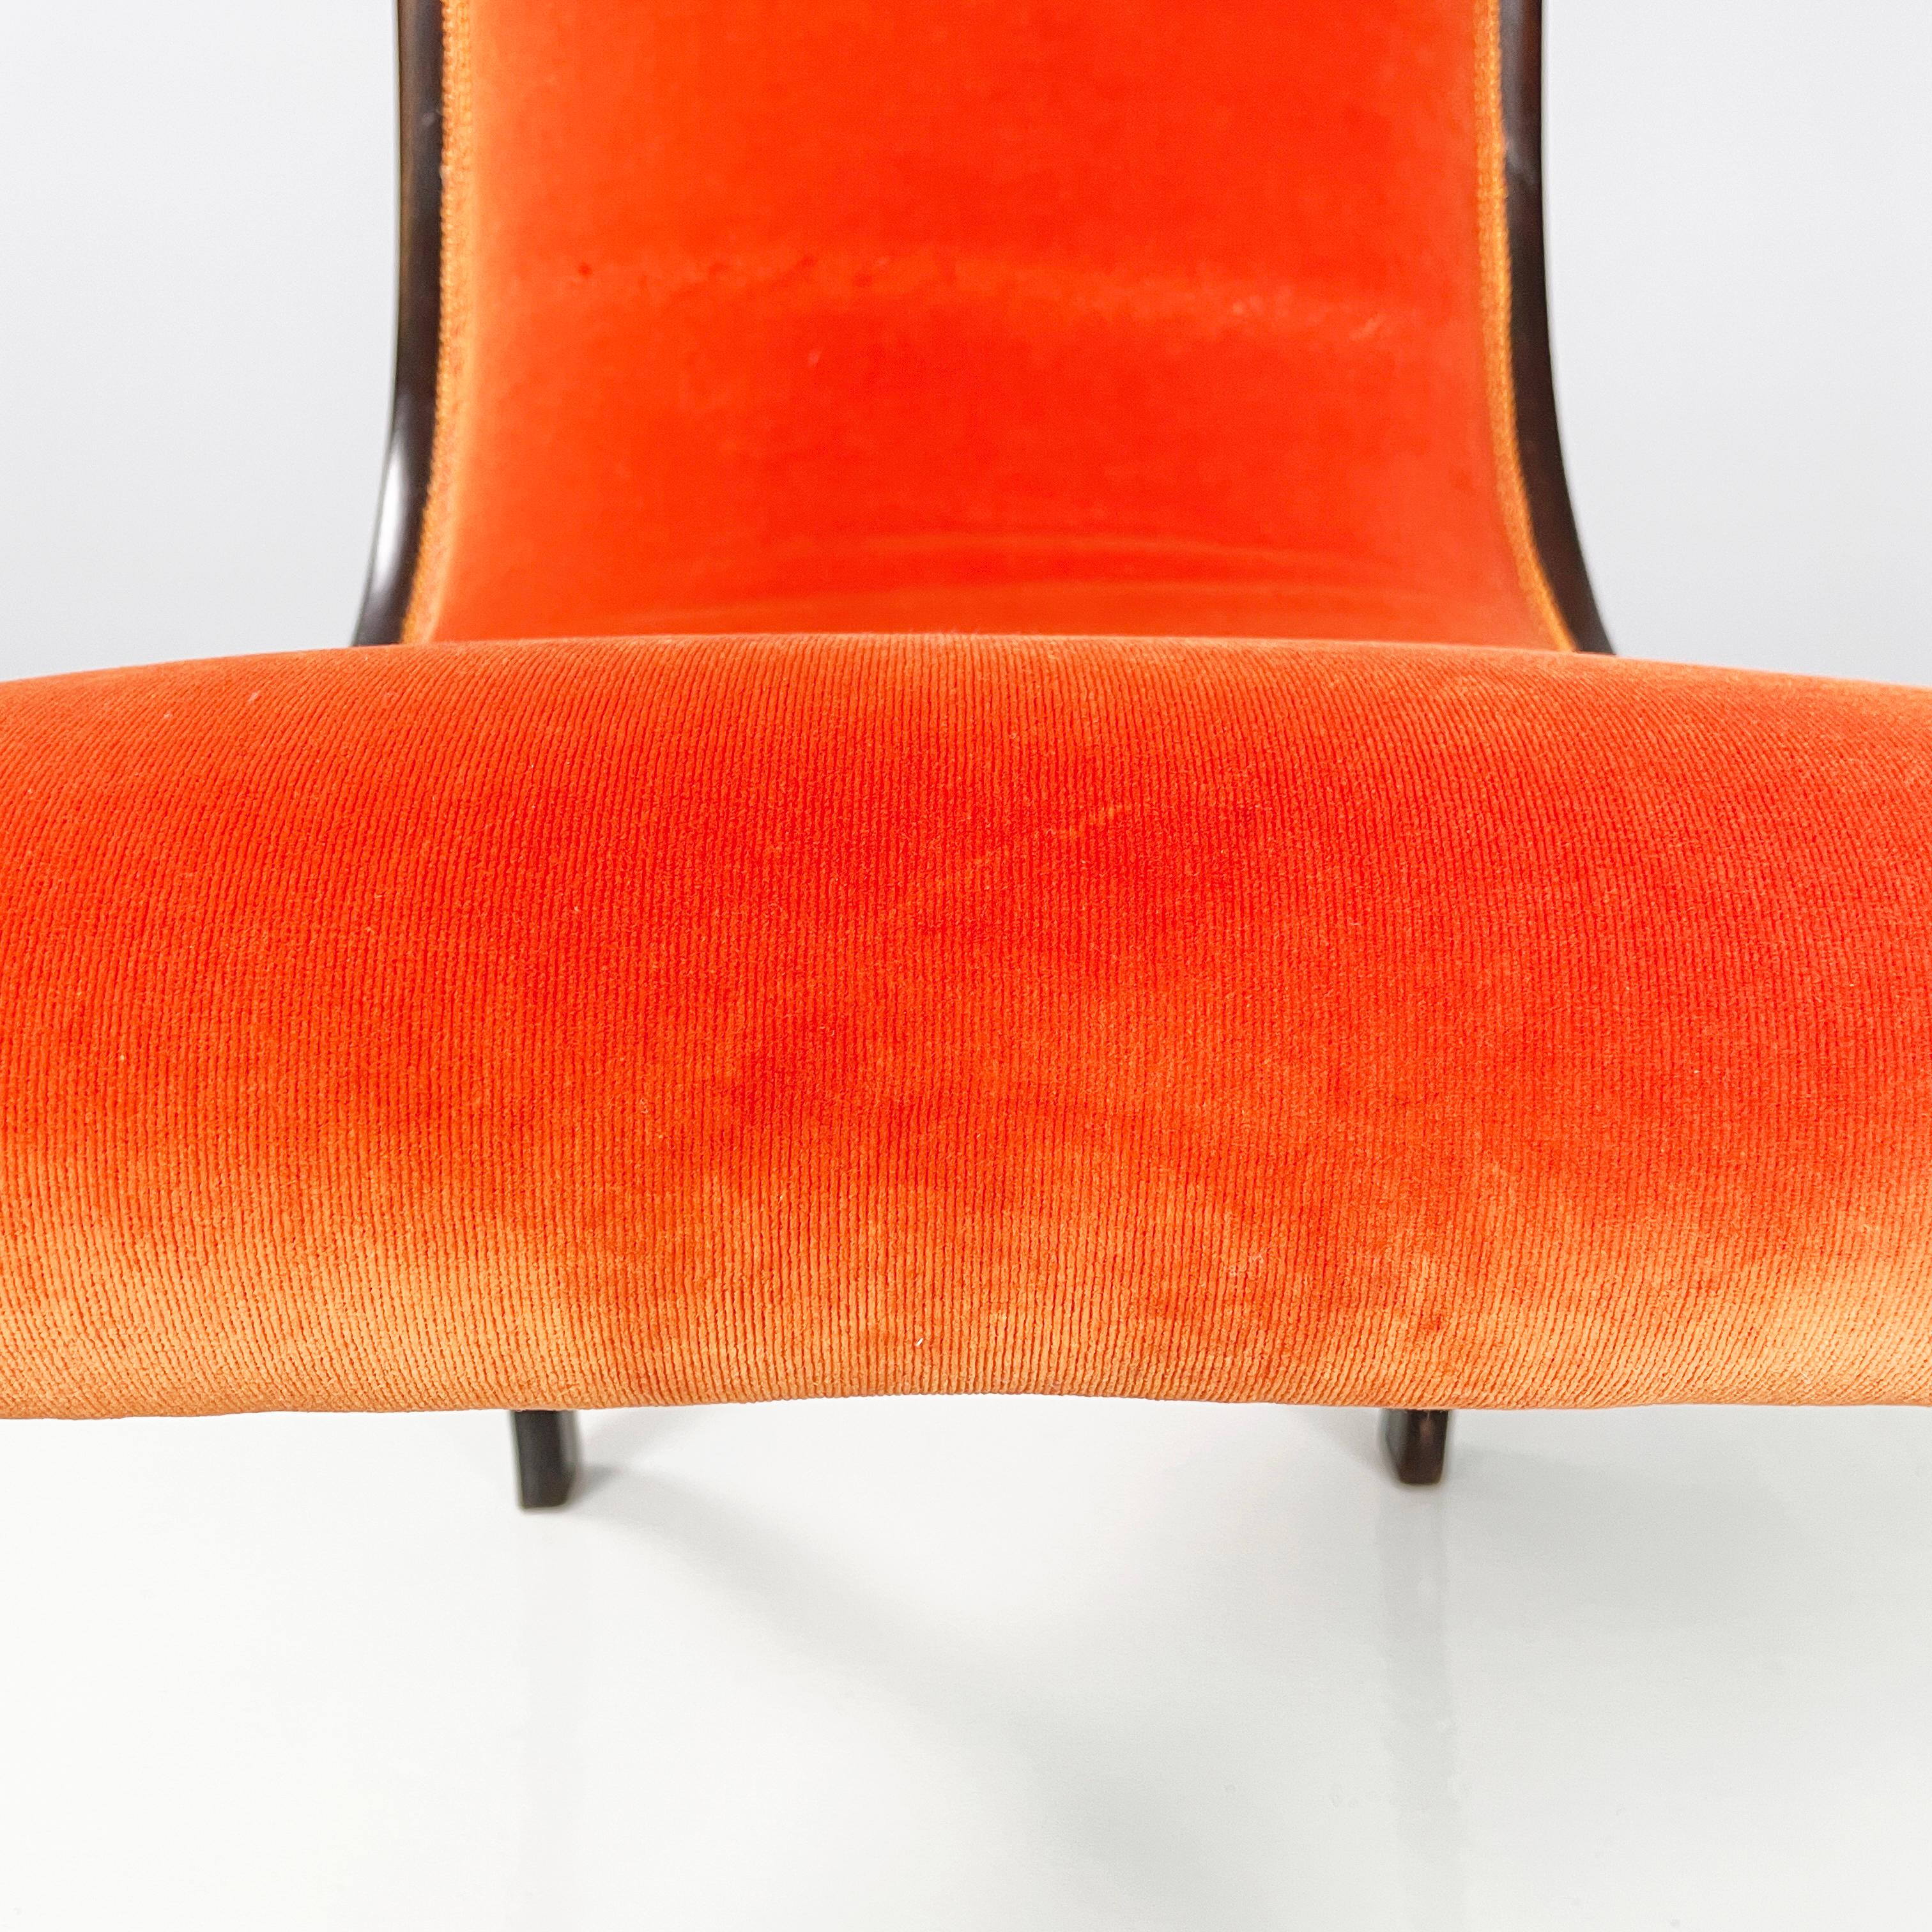 Danish mid-century modern Chair in orange velvet and dark wood, 1950s For Sale 6